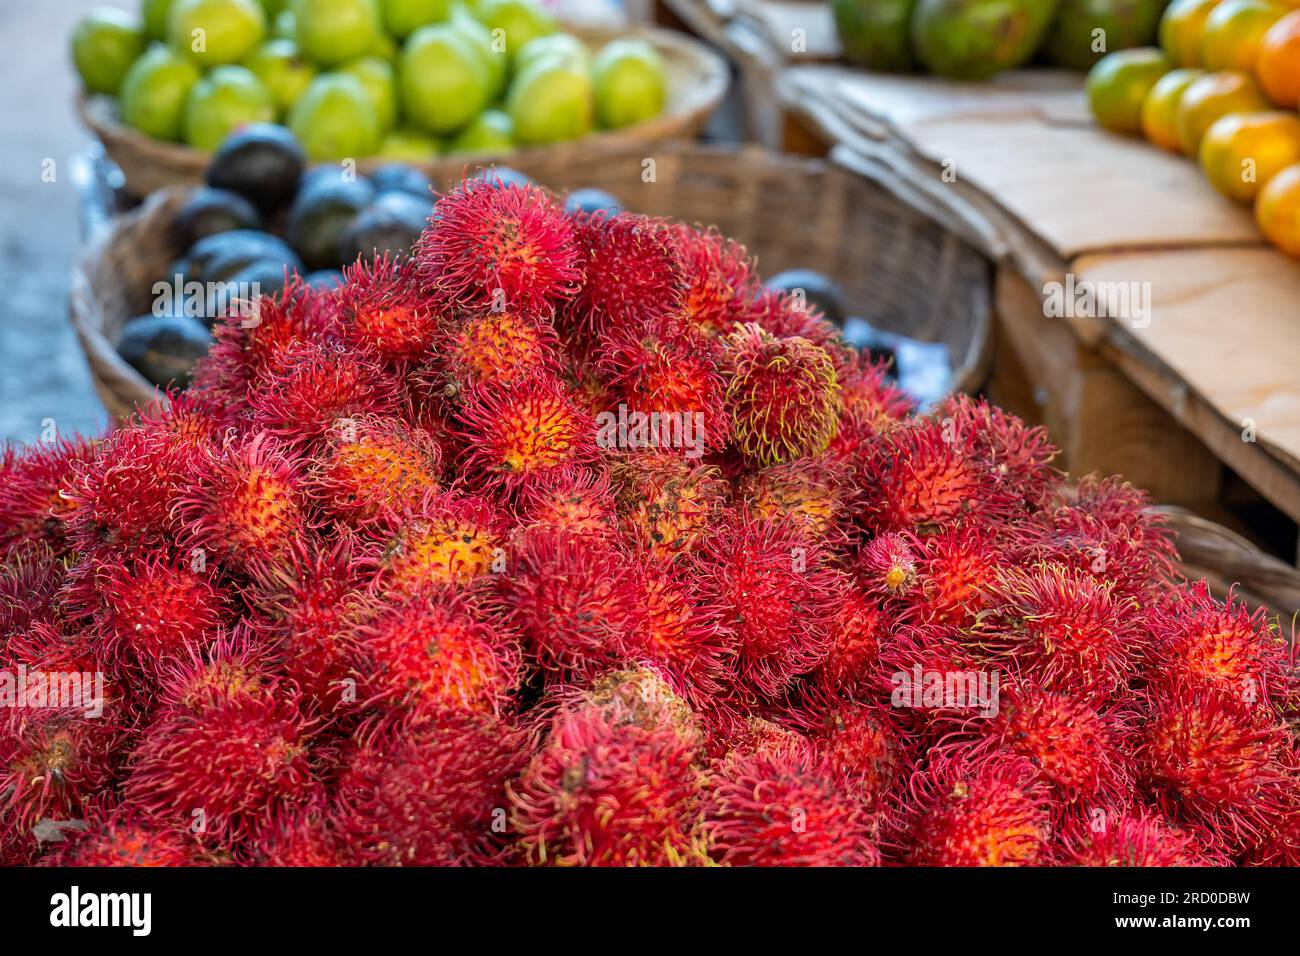 Ein Haufen reifer Rambutan (Nephelium lappaceum), Eine Frucht, die von Südostasien stammt, auf einem Stand im farbenfrohen Markt „Mercado mayoreo“ in der Nähe des Nationalstadiu Stockfoto